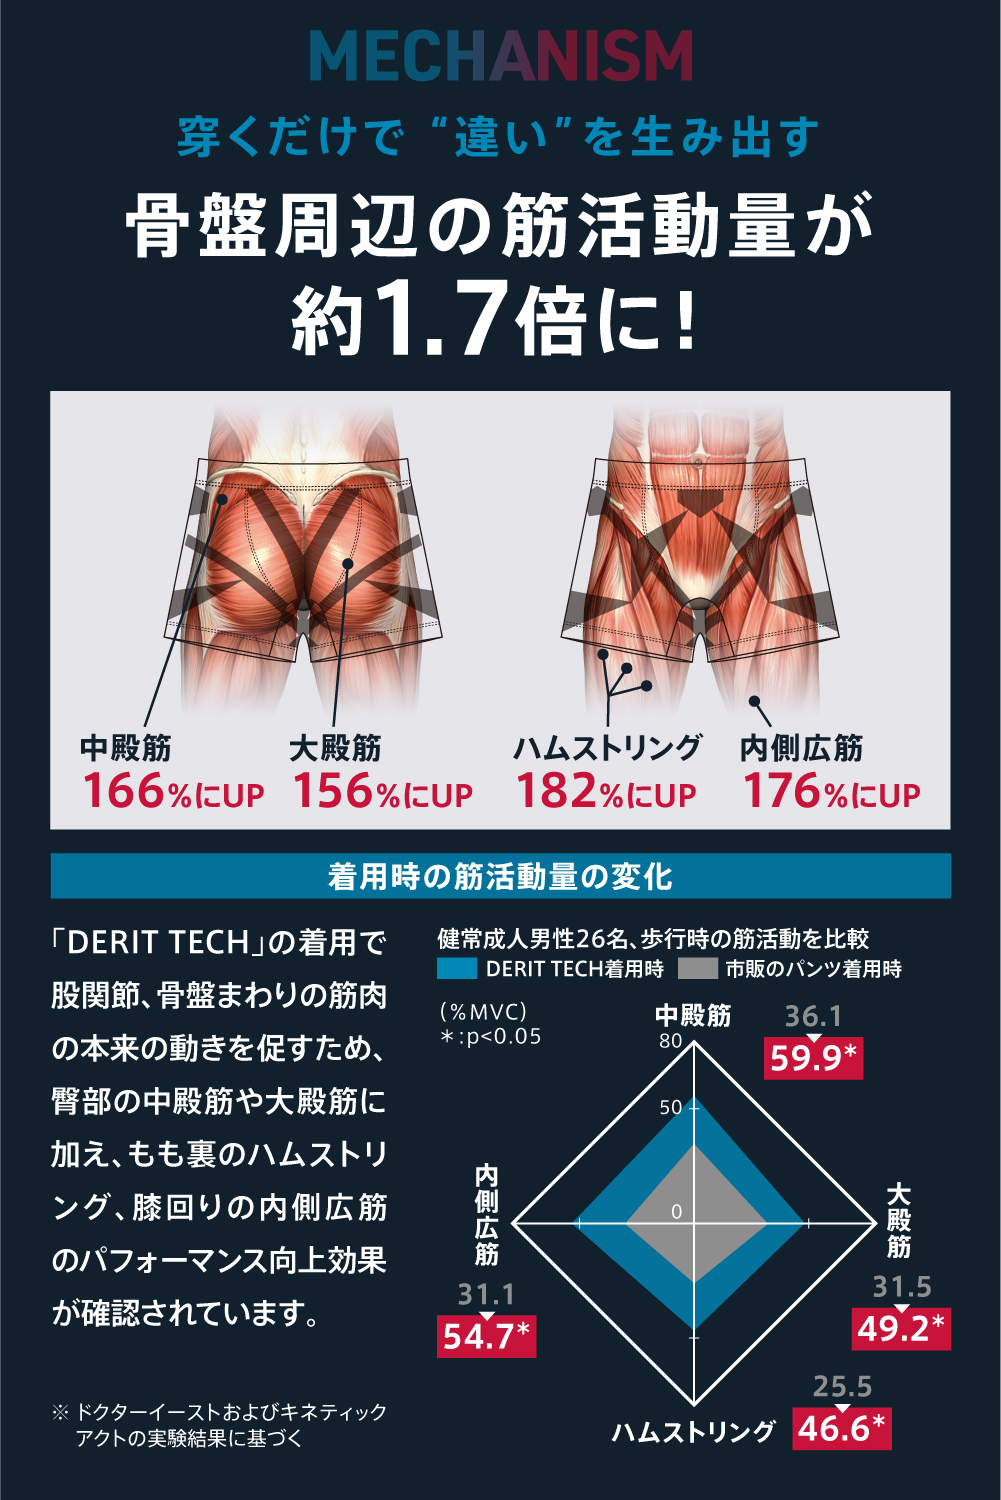 【キャンペーン】男性用DERIT TECH（デリットテック） SHORT SPATS